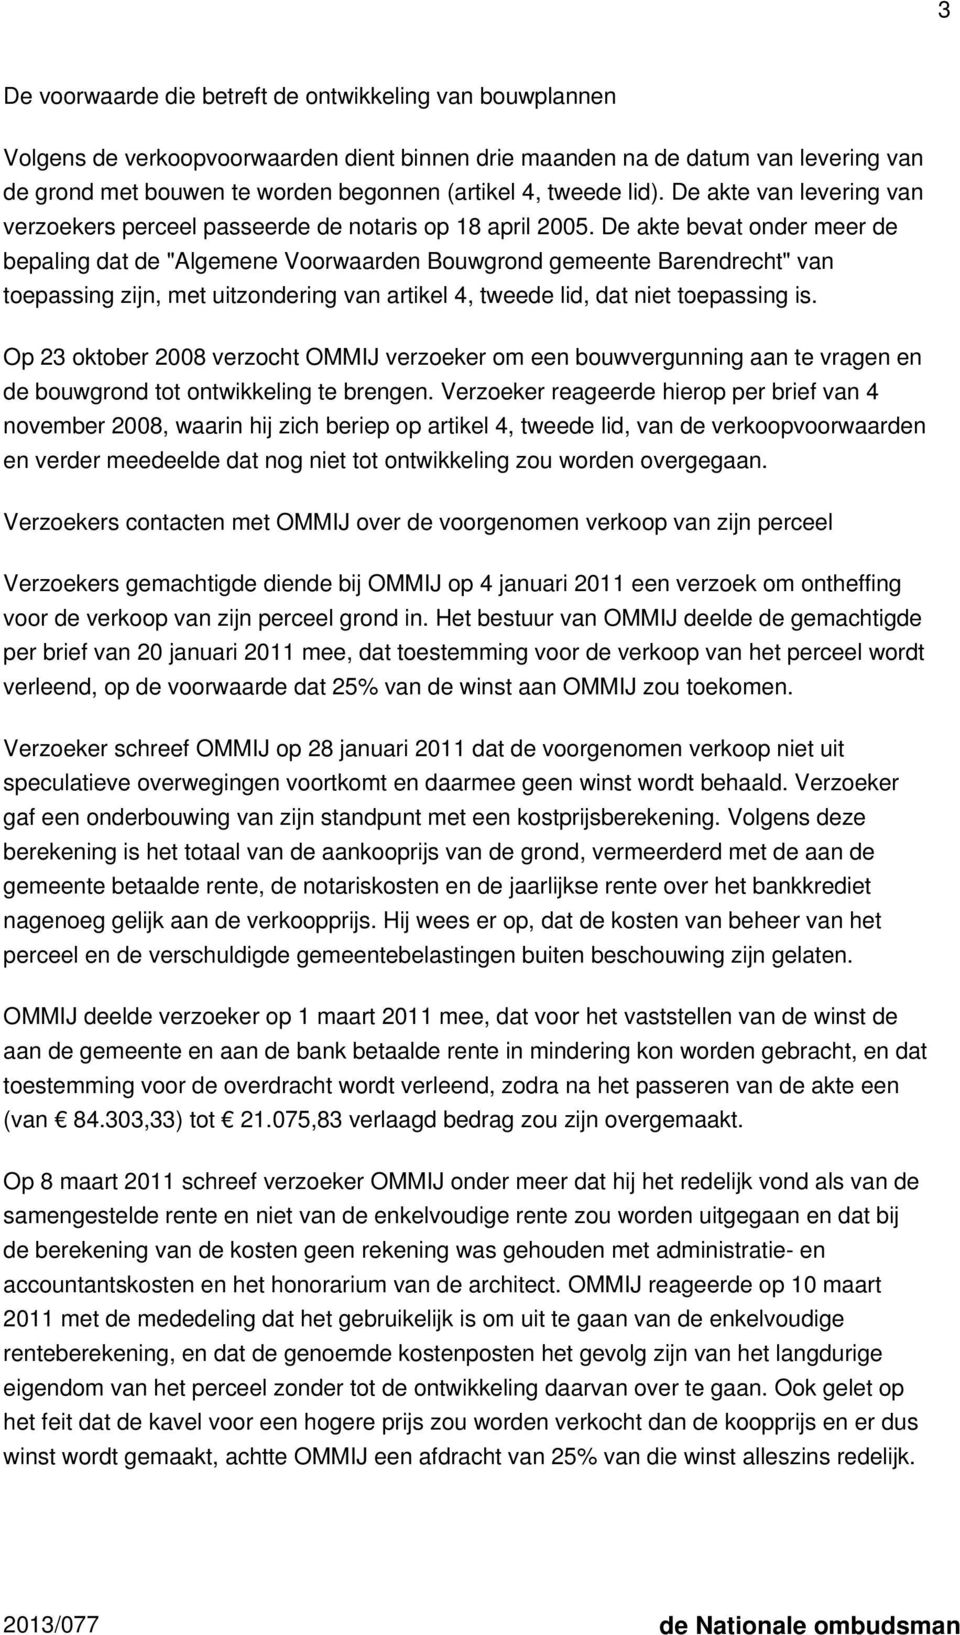 De akte bevat onder meer de bepaling dat de "Algemene Voorwaarden Bouwgrond gemeente Barendrecht" van toepassing zijn, met uitzondering van artikel 4, tweede lid, dat niet toepassing is.